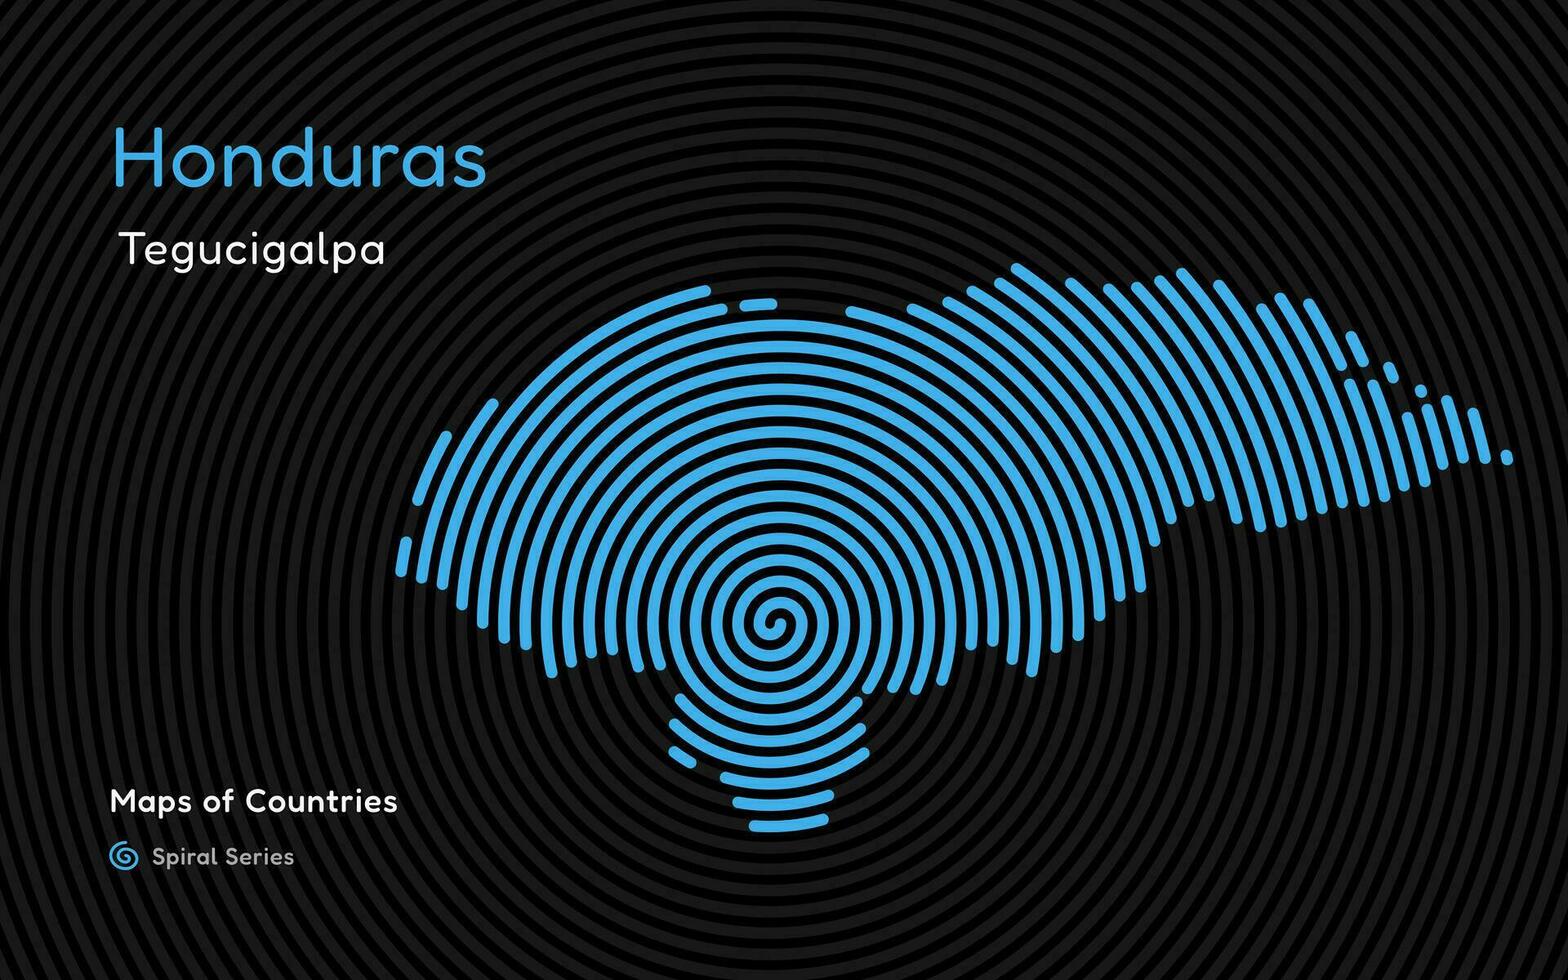 abstract kaart van Honduras in een cirkel spiraal patroon met een hoofdstad van tegucigalpa. Latijns Amerika set. vector